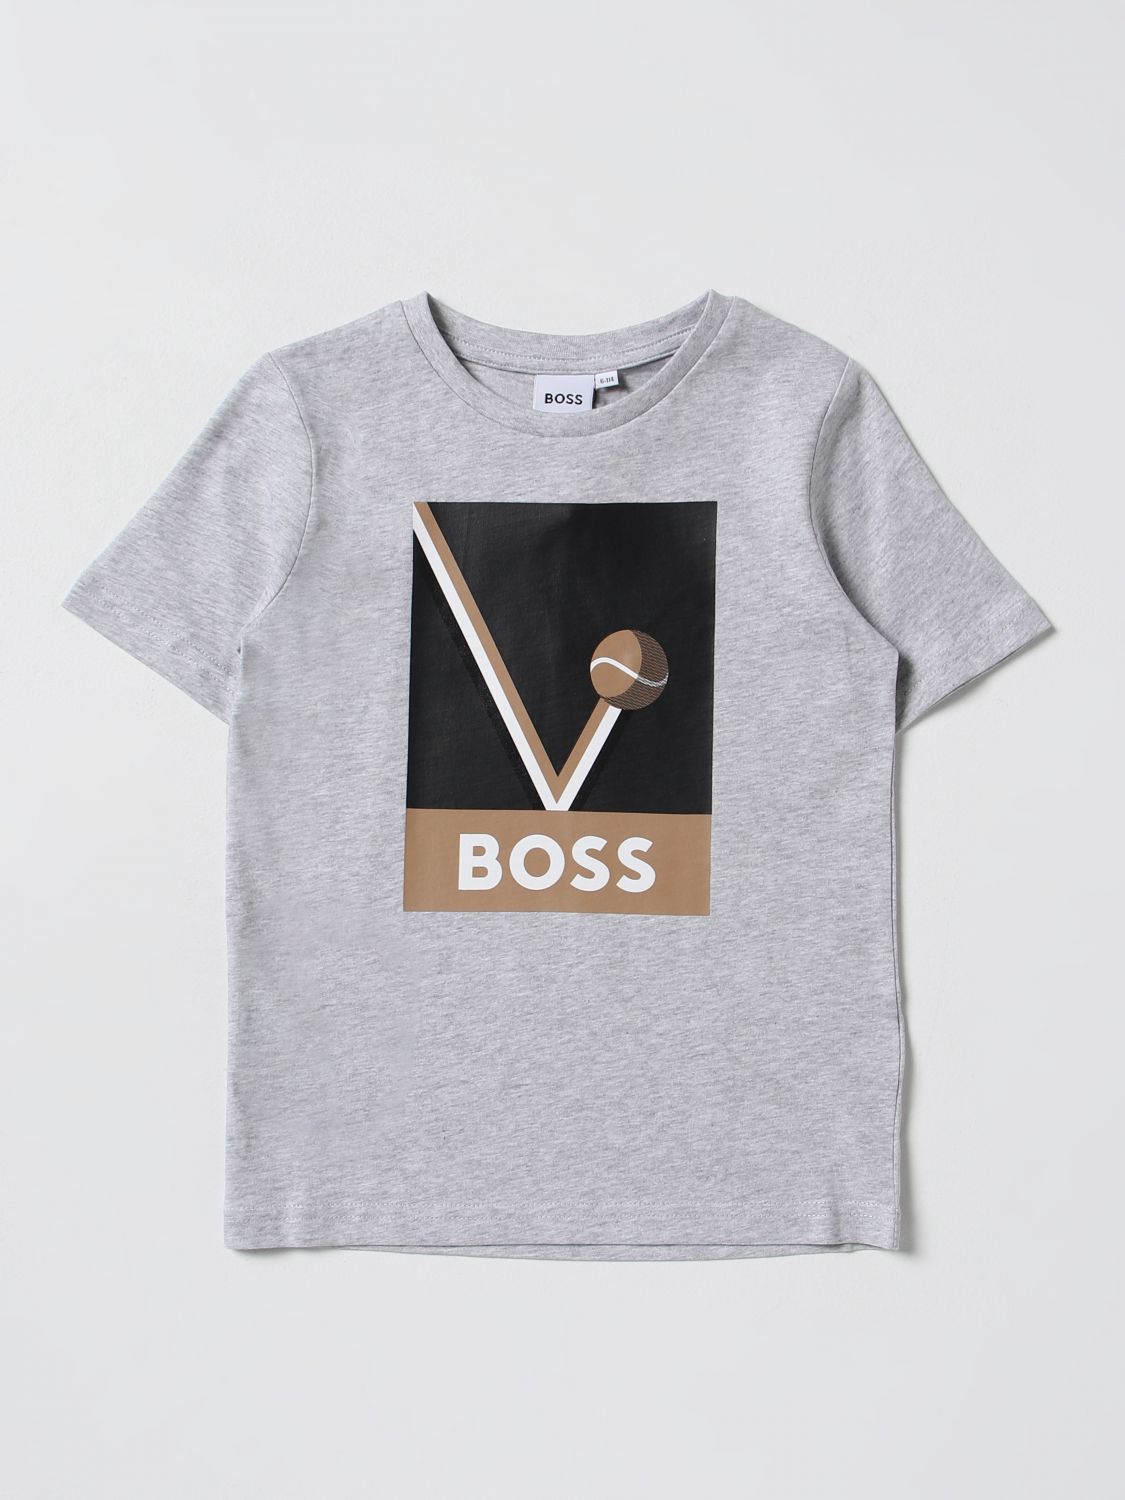 Bosswear T-shirt Boss Kidswear Kids Color Grey